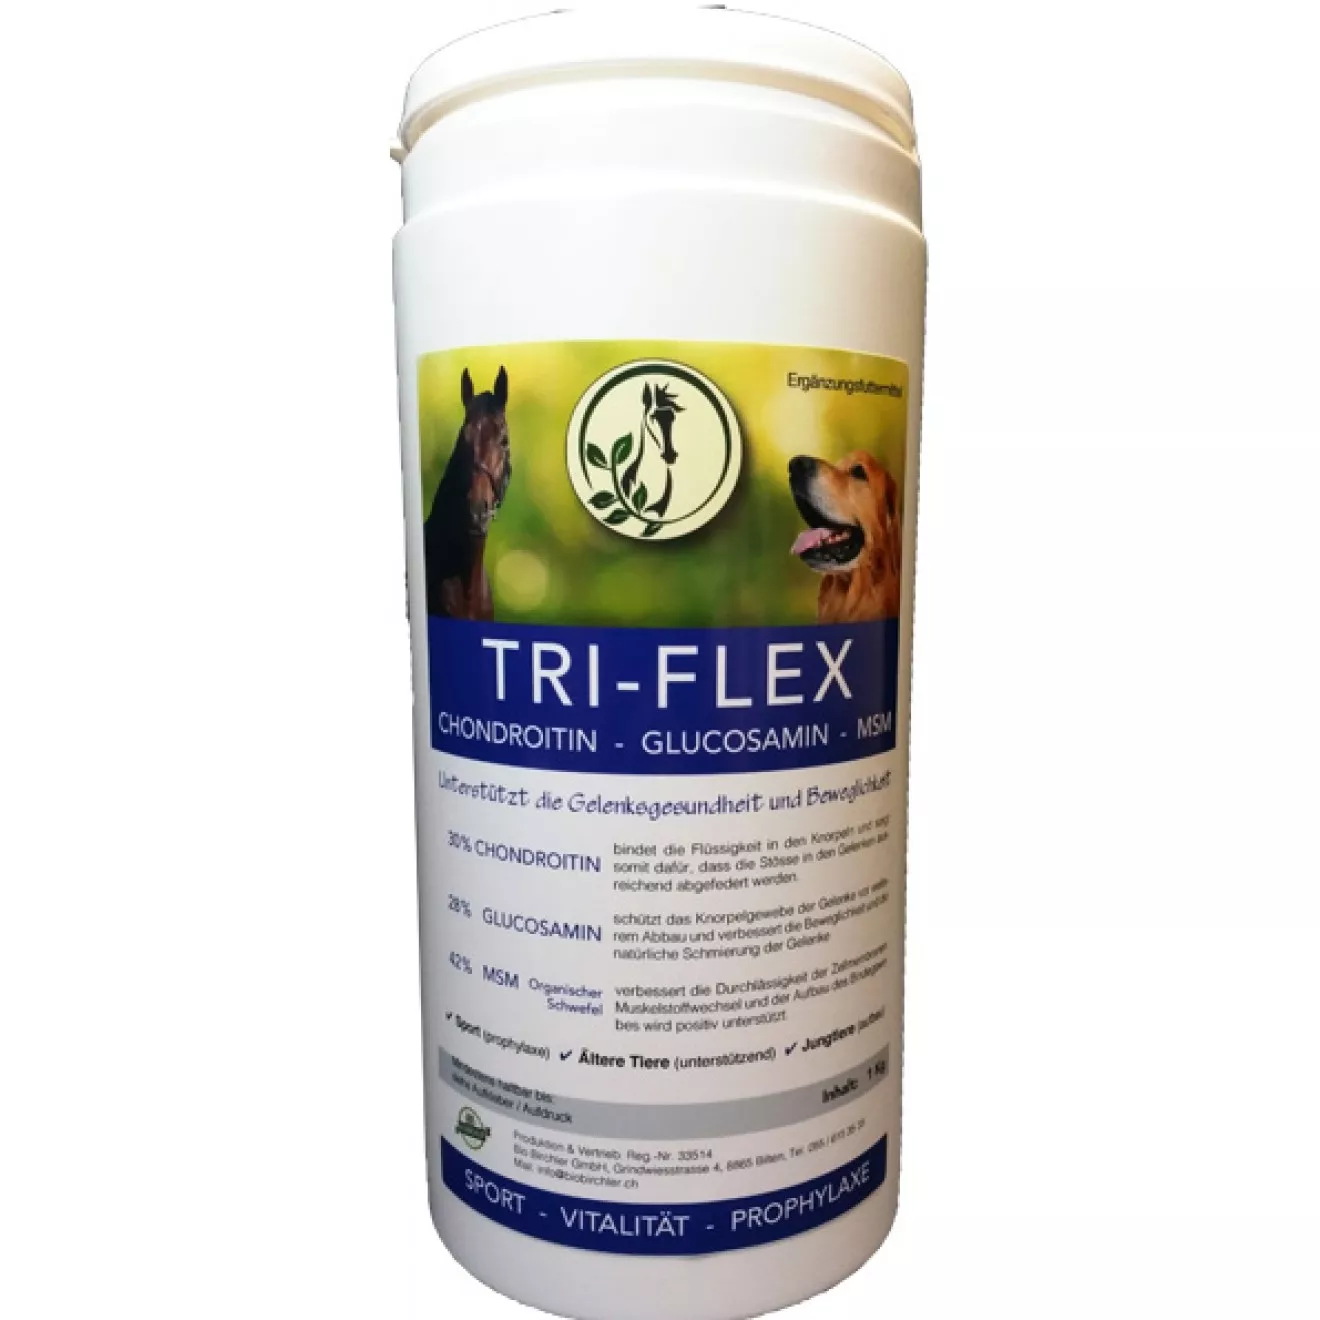 TRI-FLEX, polvere protettiva per le articolazioni, barattolo da 750 g